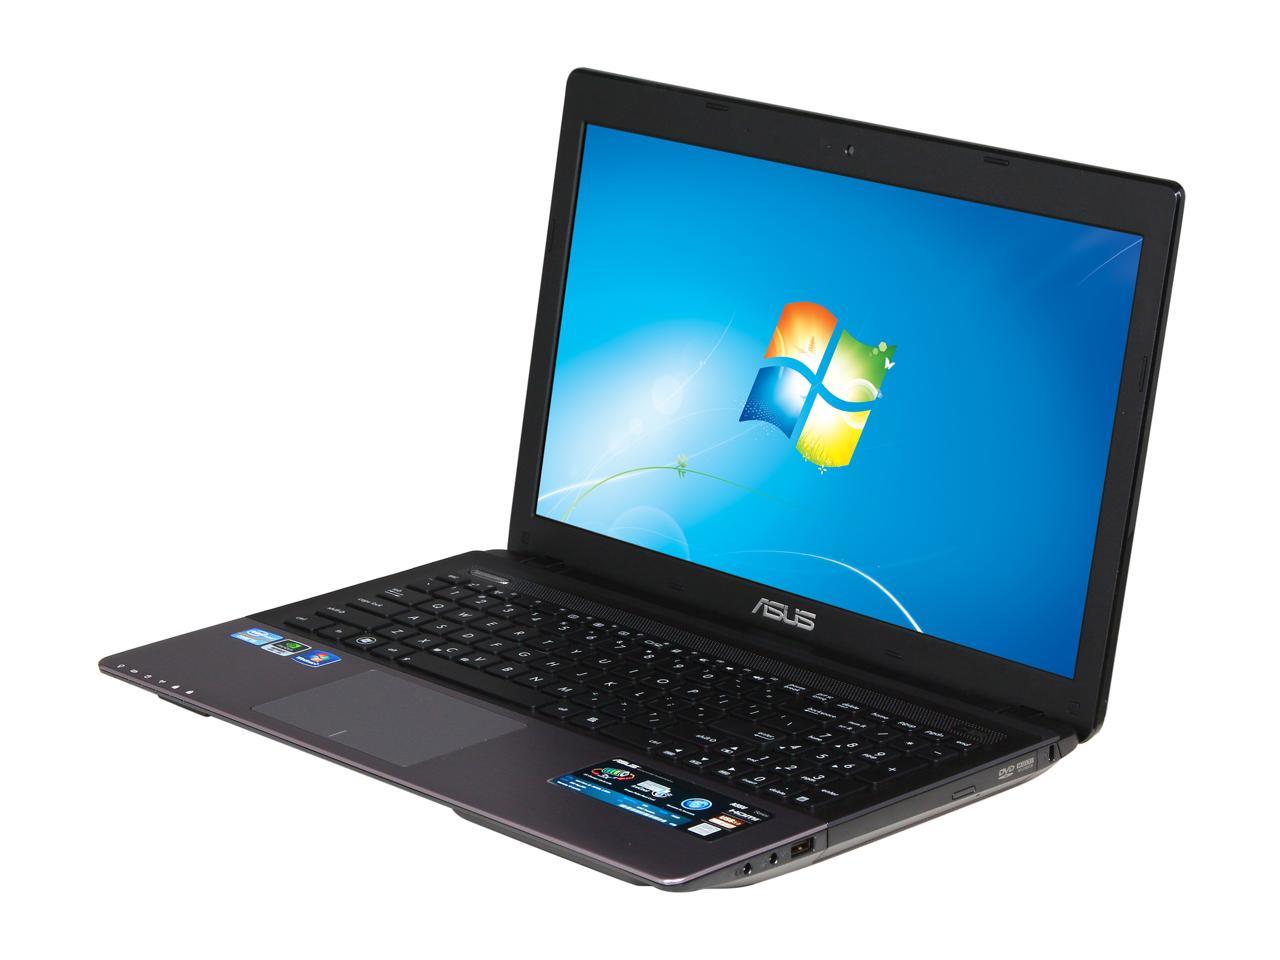 ASUS Laptop A55 Series A55VD-NB51 Intel Core i5 3rd Gen ...